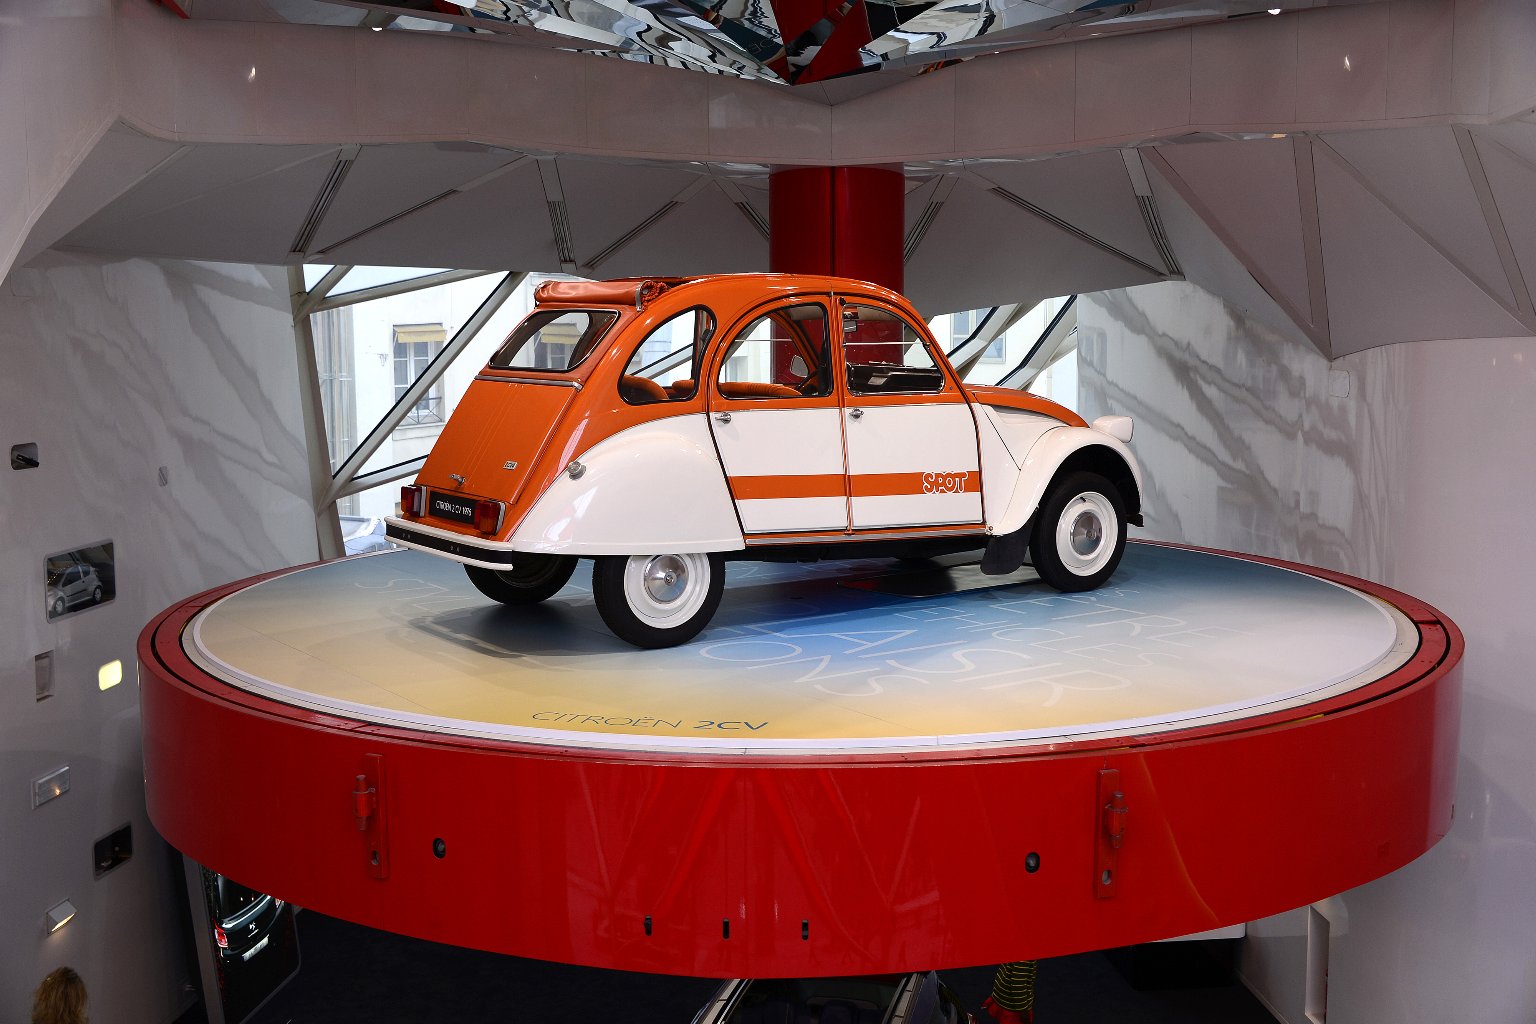 C42: Citroën Showroom